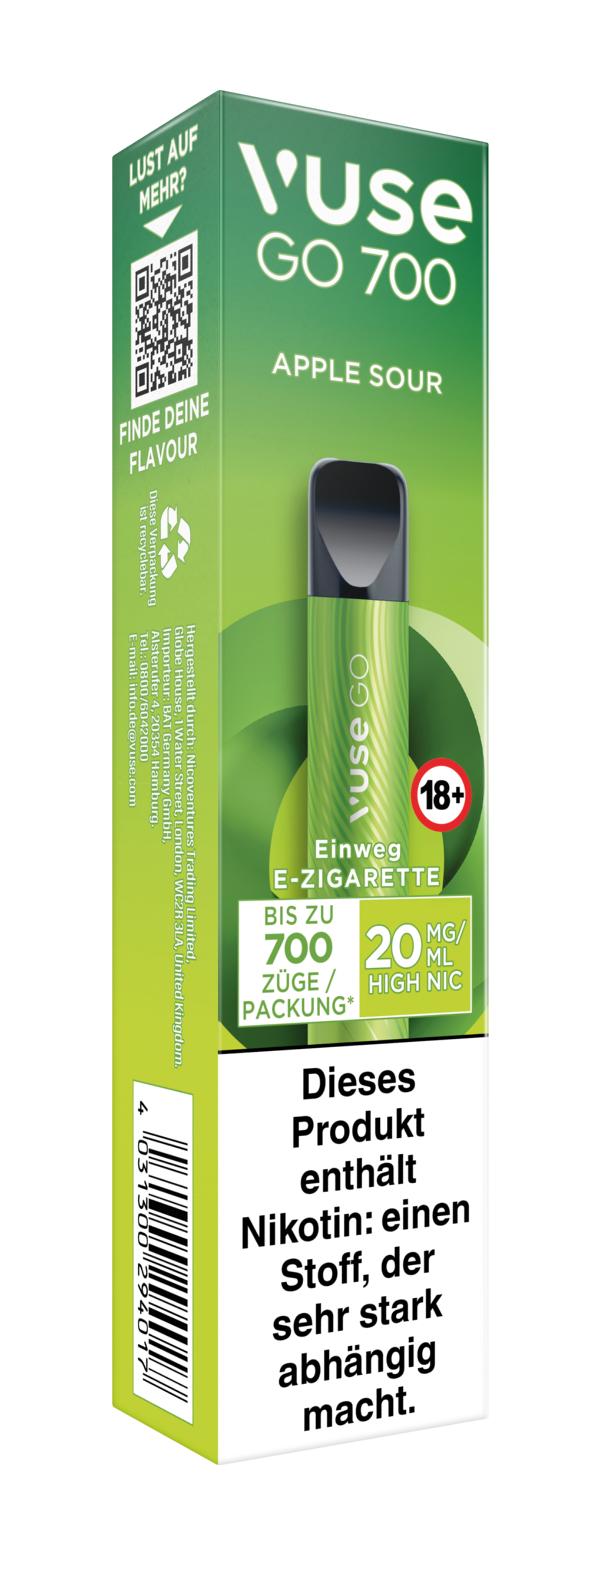 Vuse Go 700 Einweg E-Zigarette Apple Sour 20mg/ml Nikotin